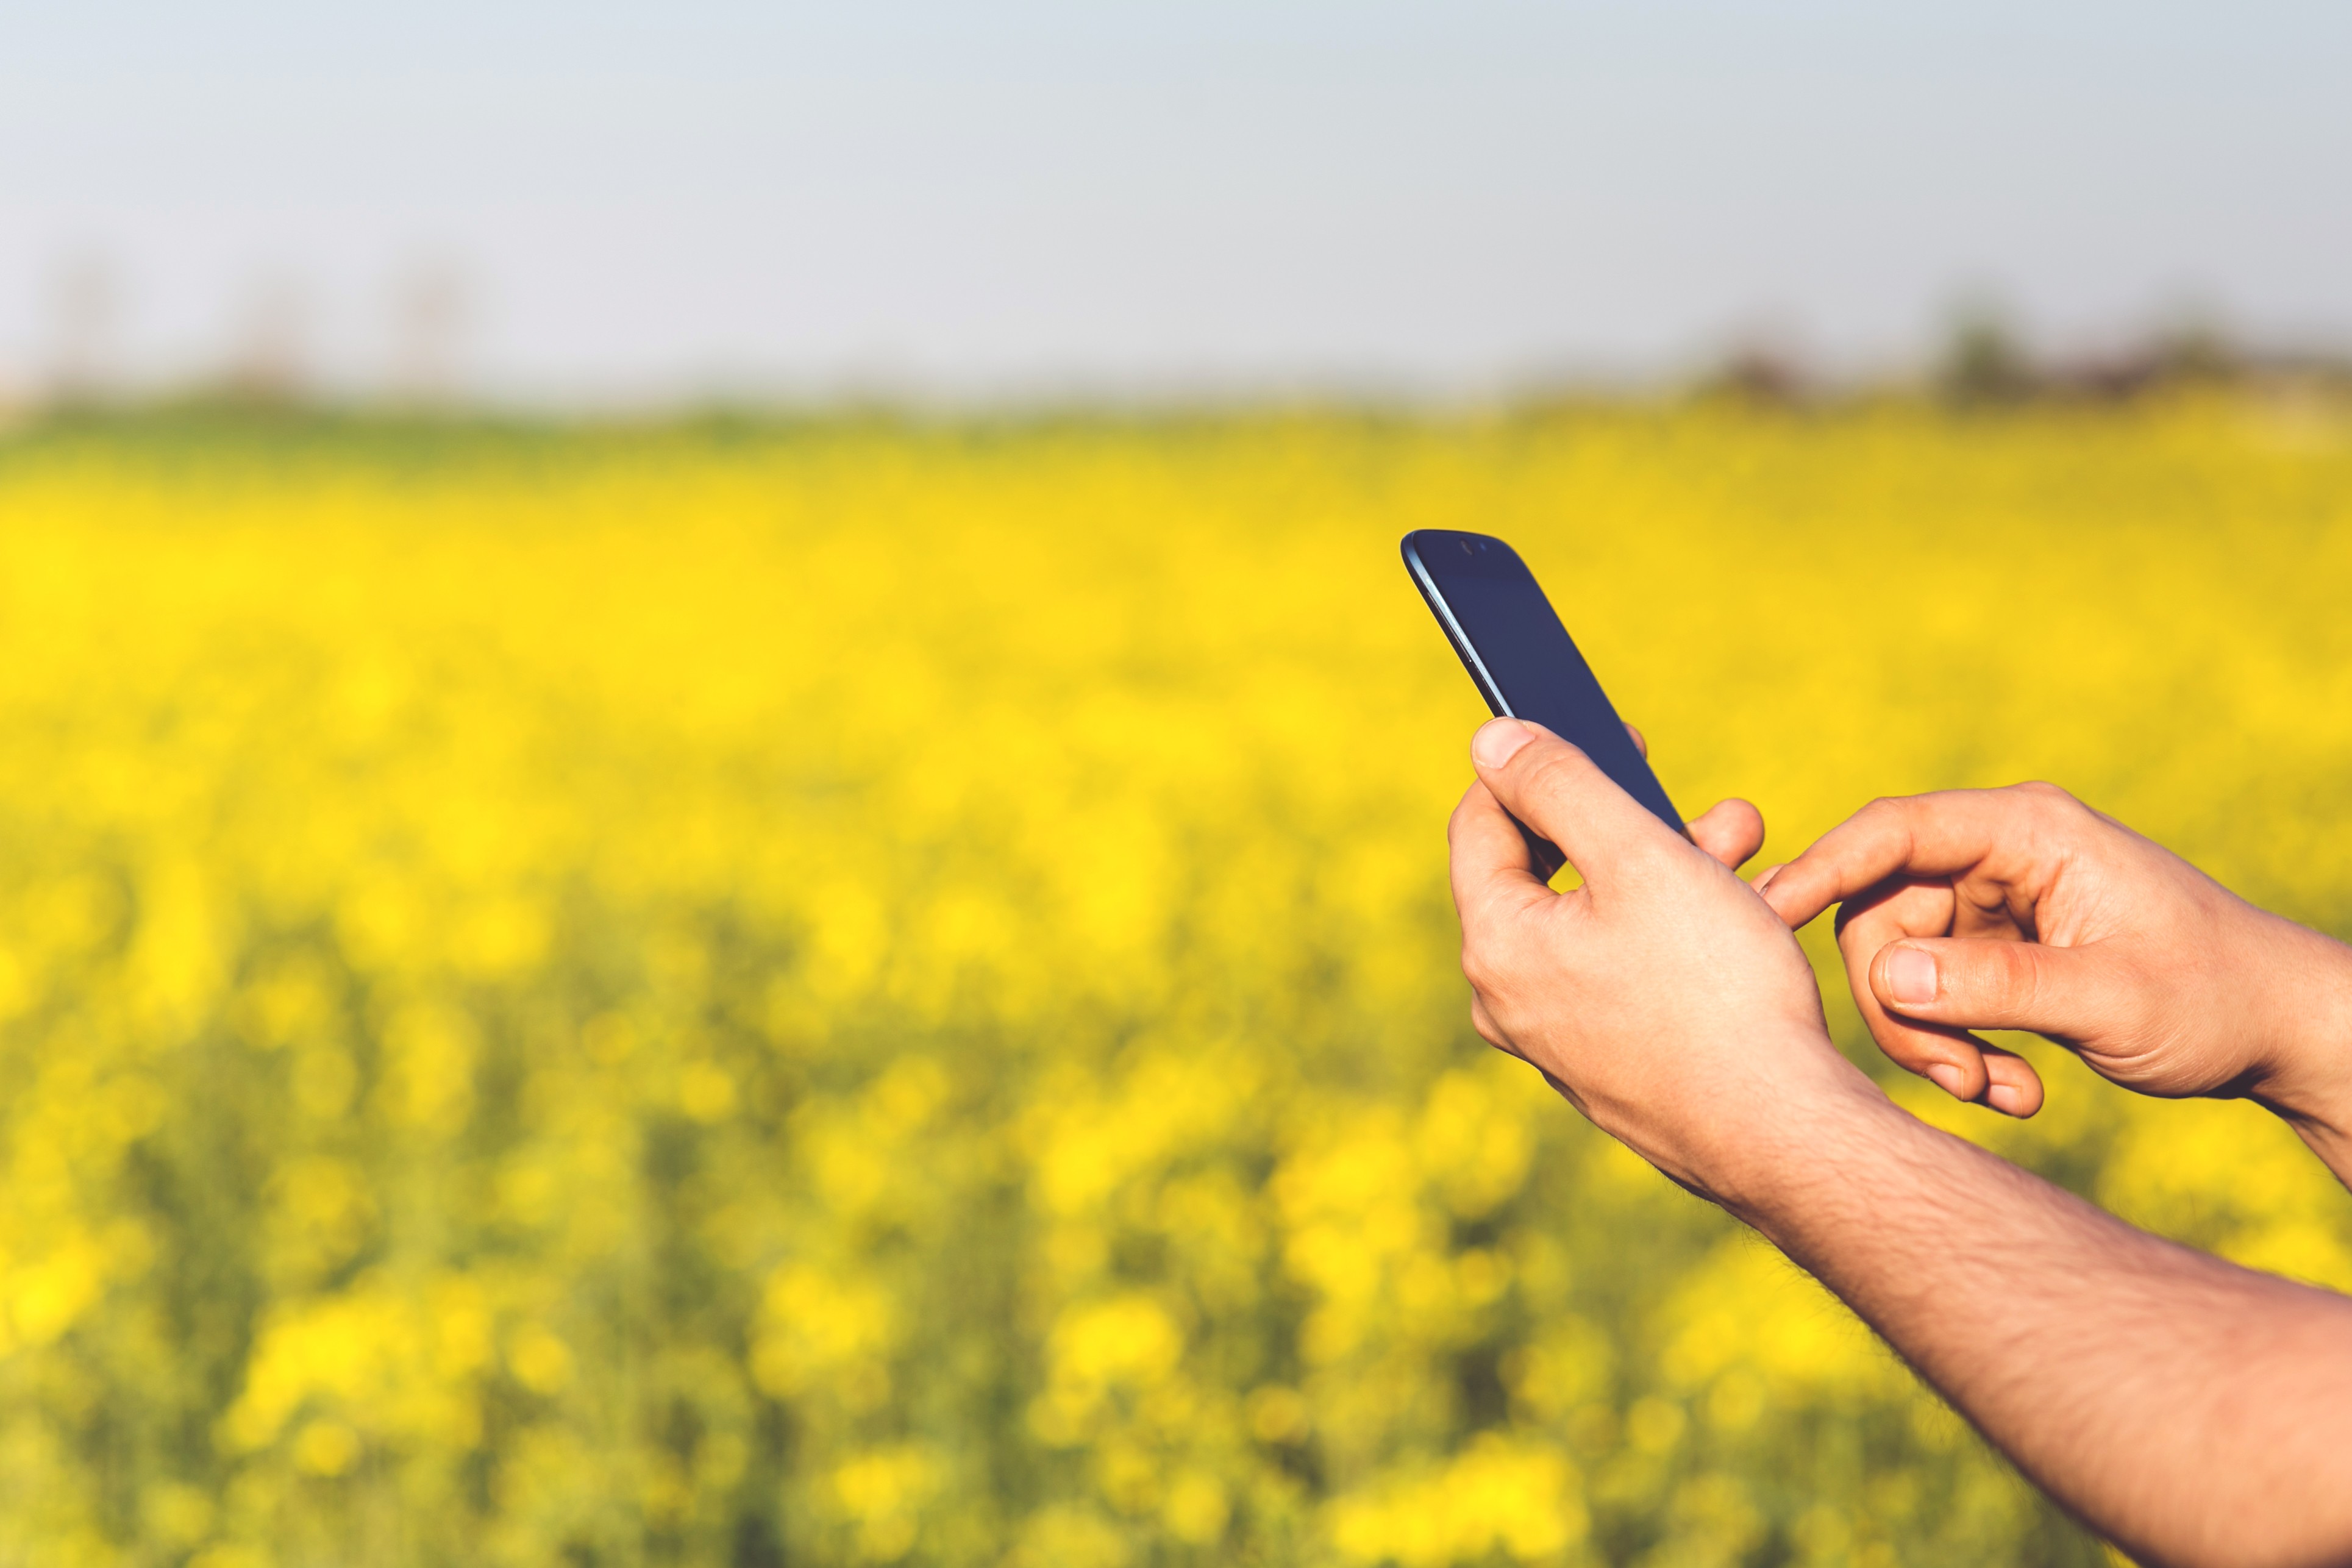 Aplicativos para celular podem otimizar a produção agrícola (Foto: Pxhere/Creative Commons)